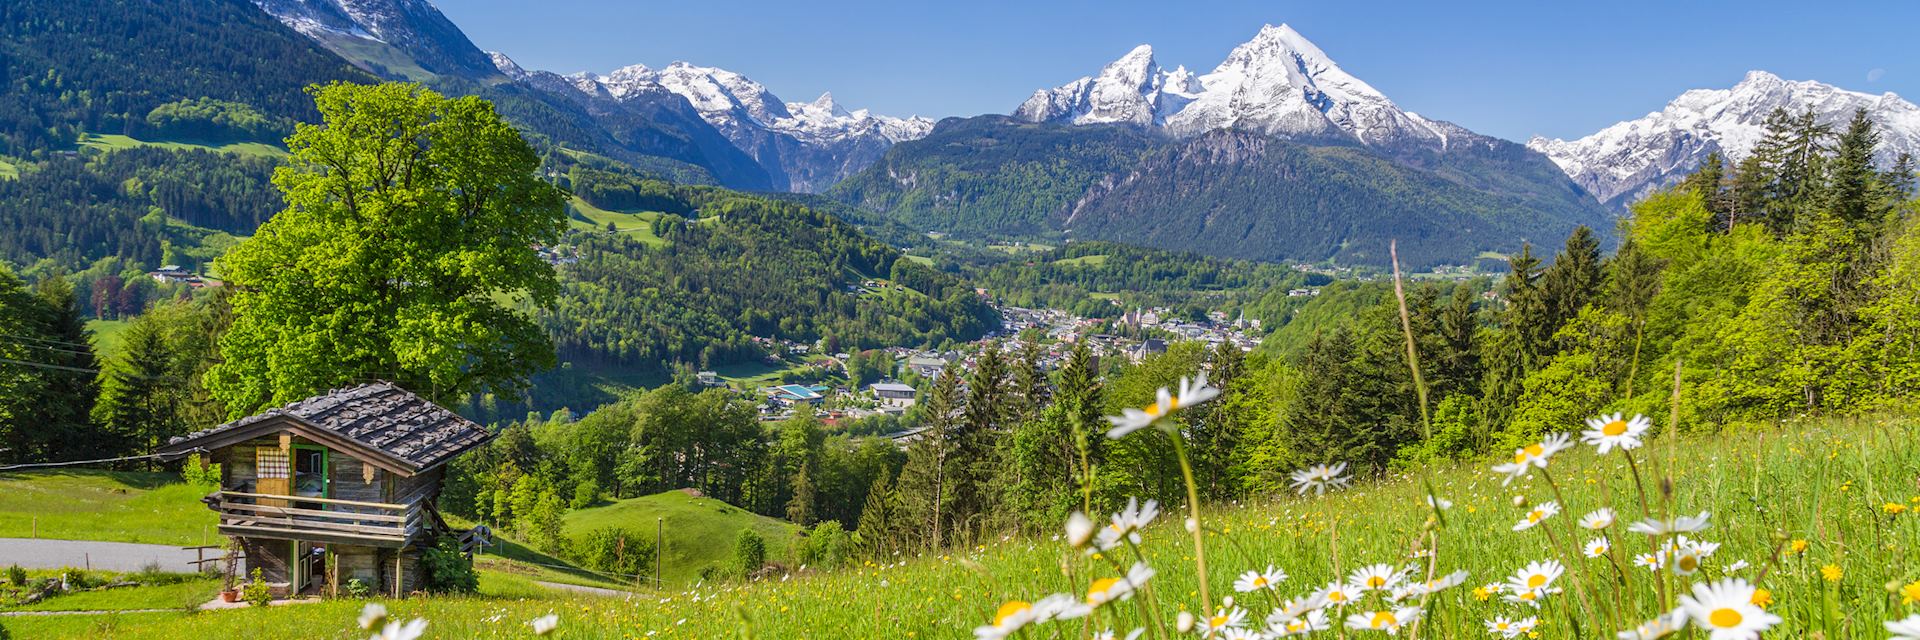 Austrian mountain village in summer